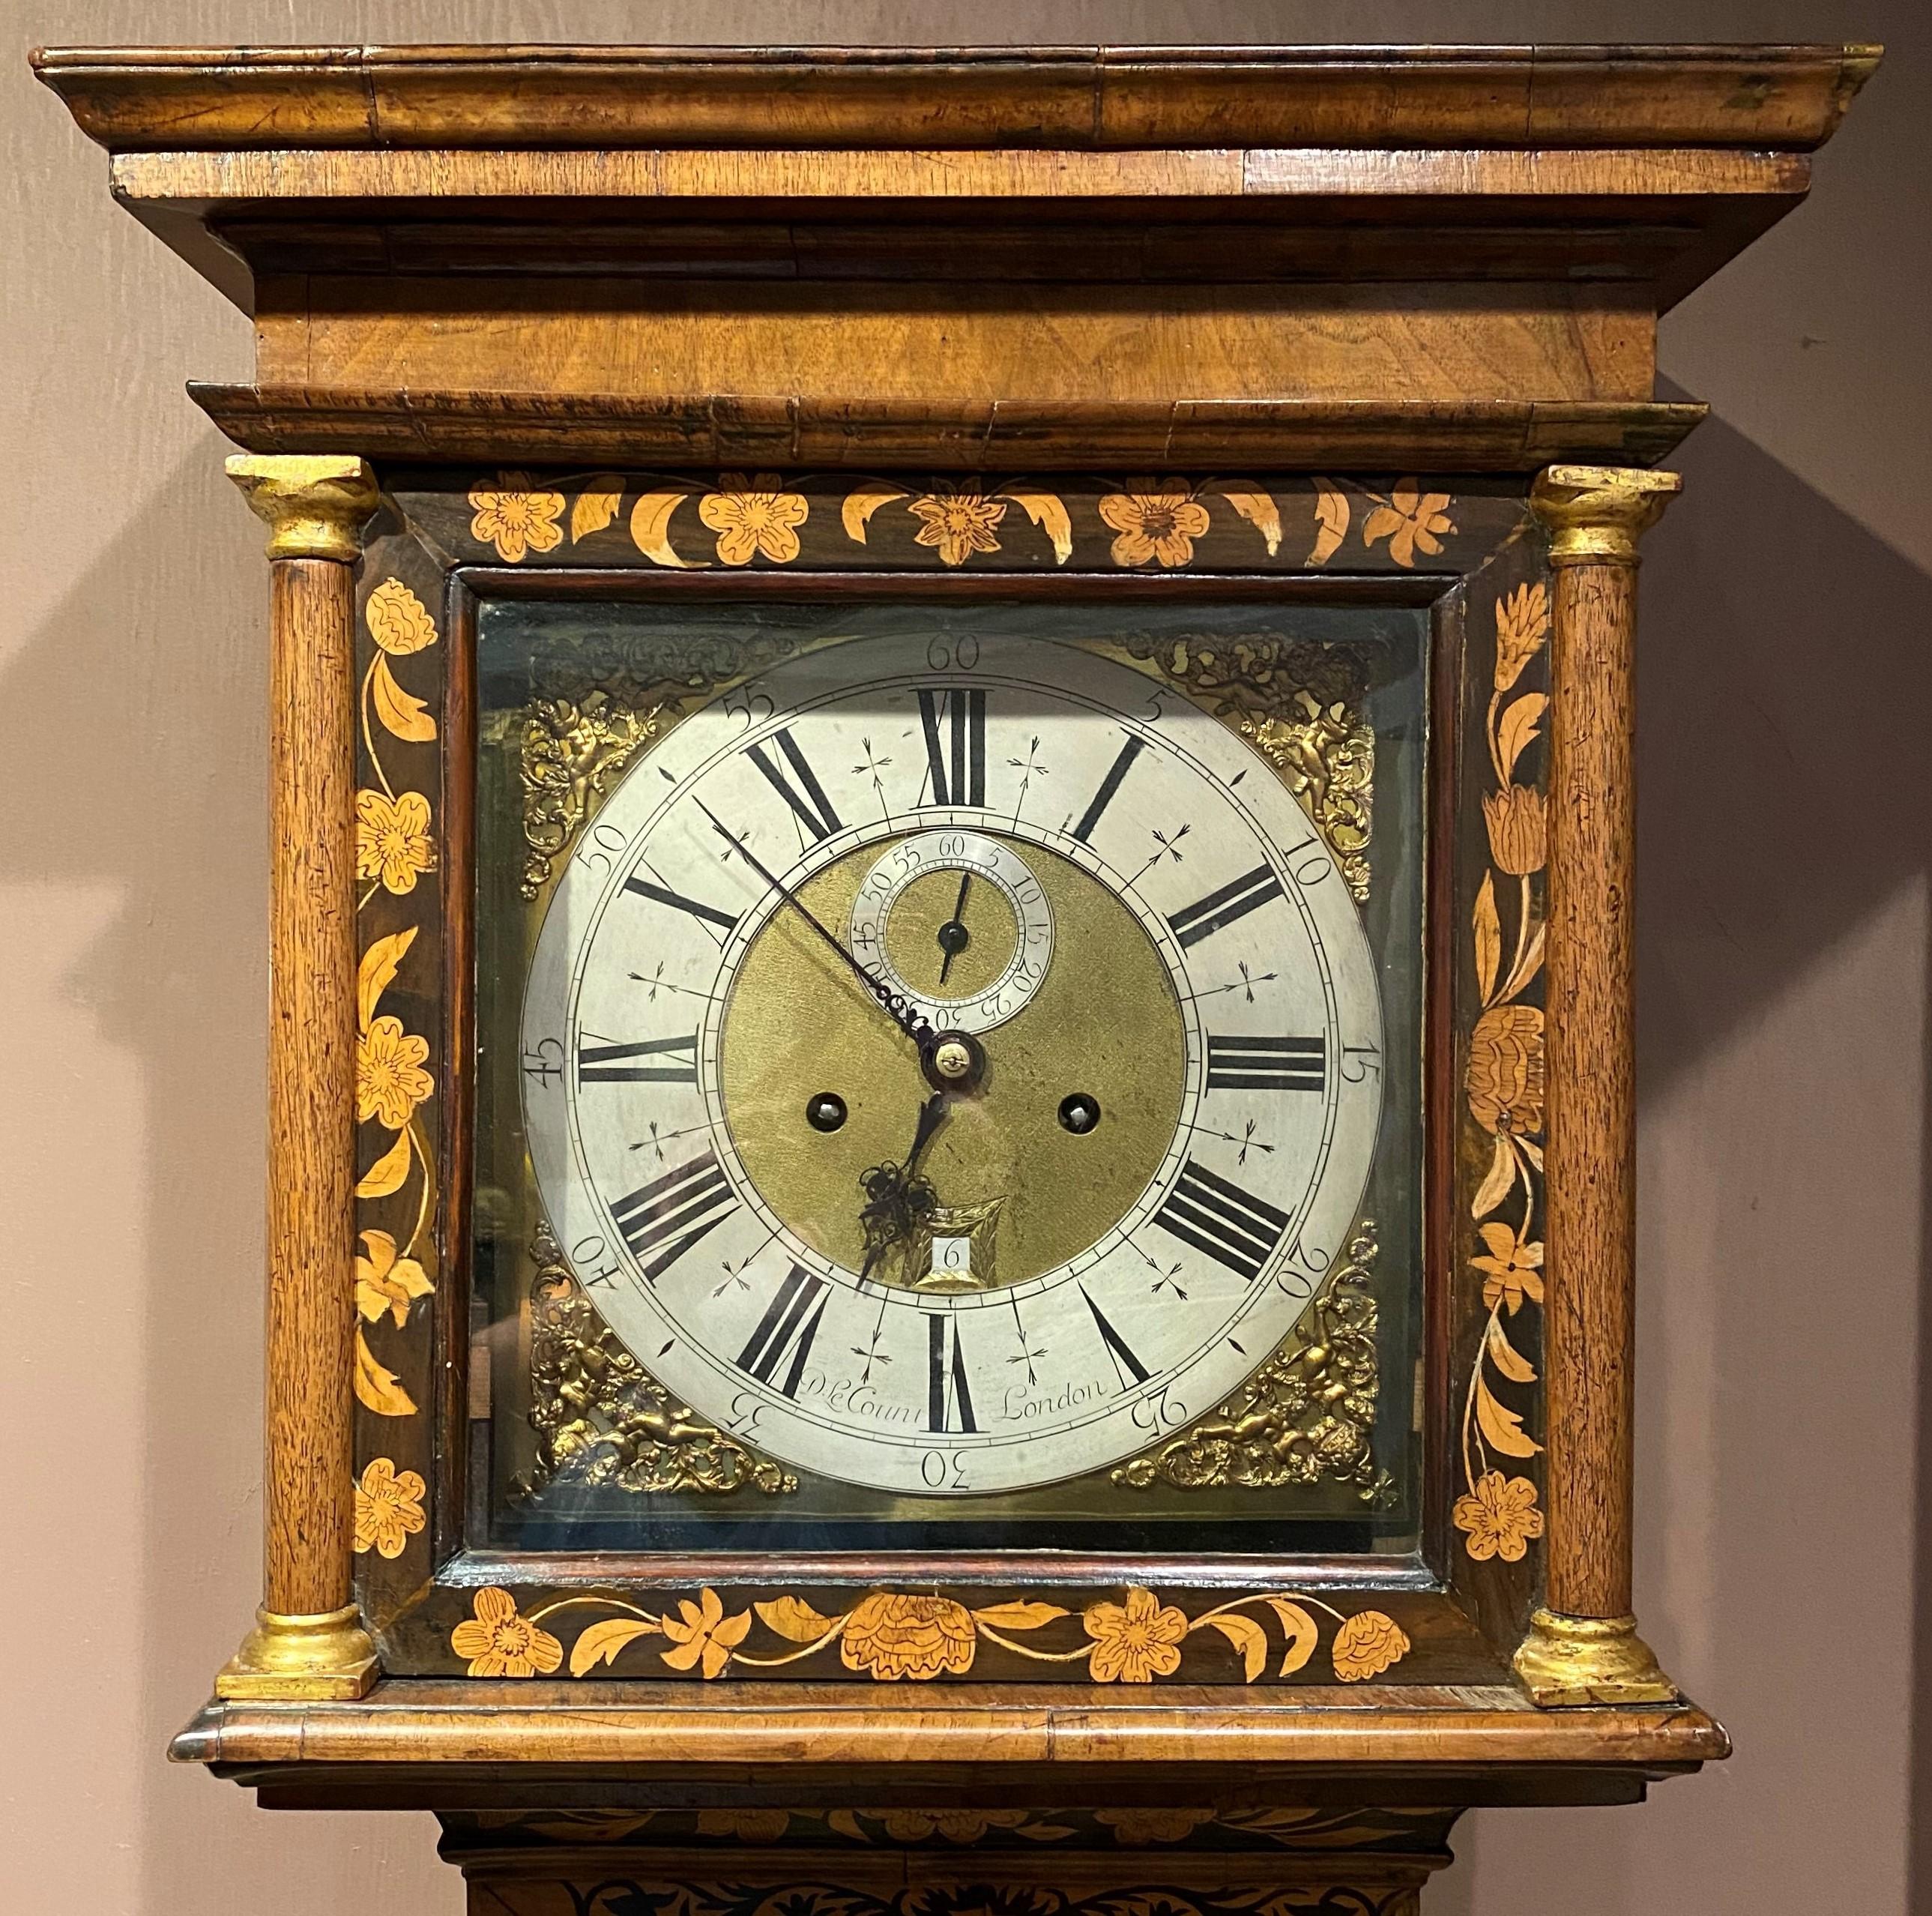 Une belle et rare horloge William & Mary à long boîtier ou horloge de grand-père par le fabricant londonien Daniel LeCompte. Vers 1690, Londres, le boîtier en marqueterie fine ayant des panneaux ovales d'oiseaux et de fleurs, le mouvement signé